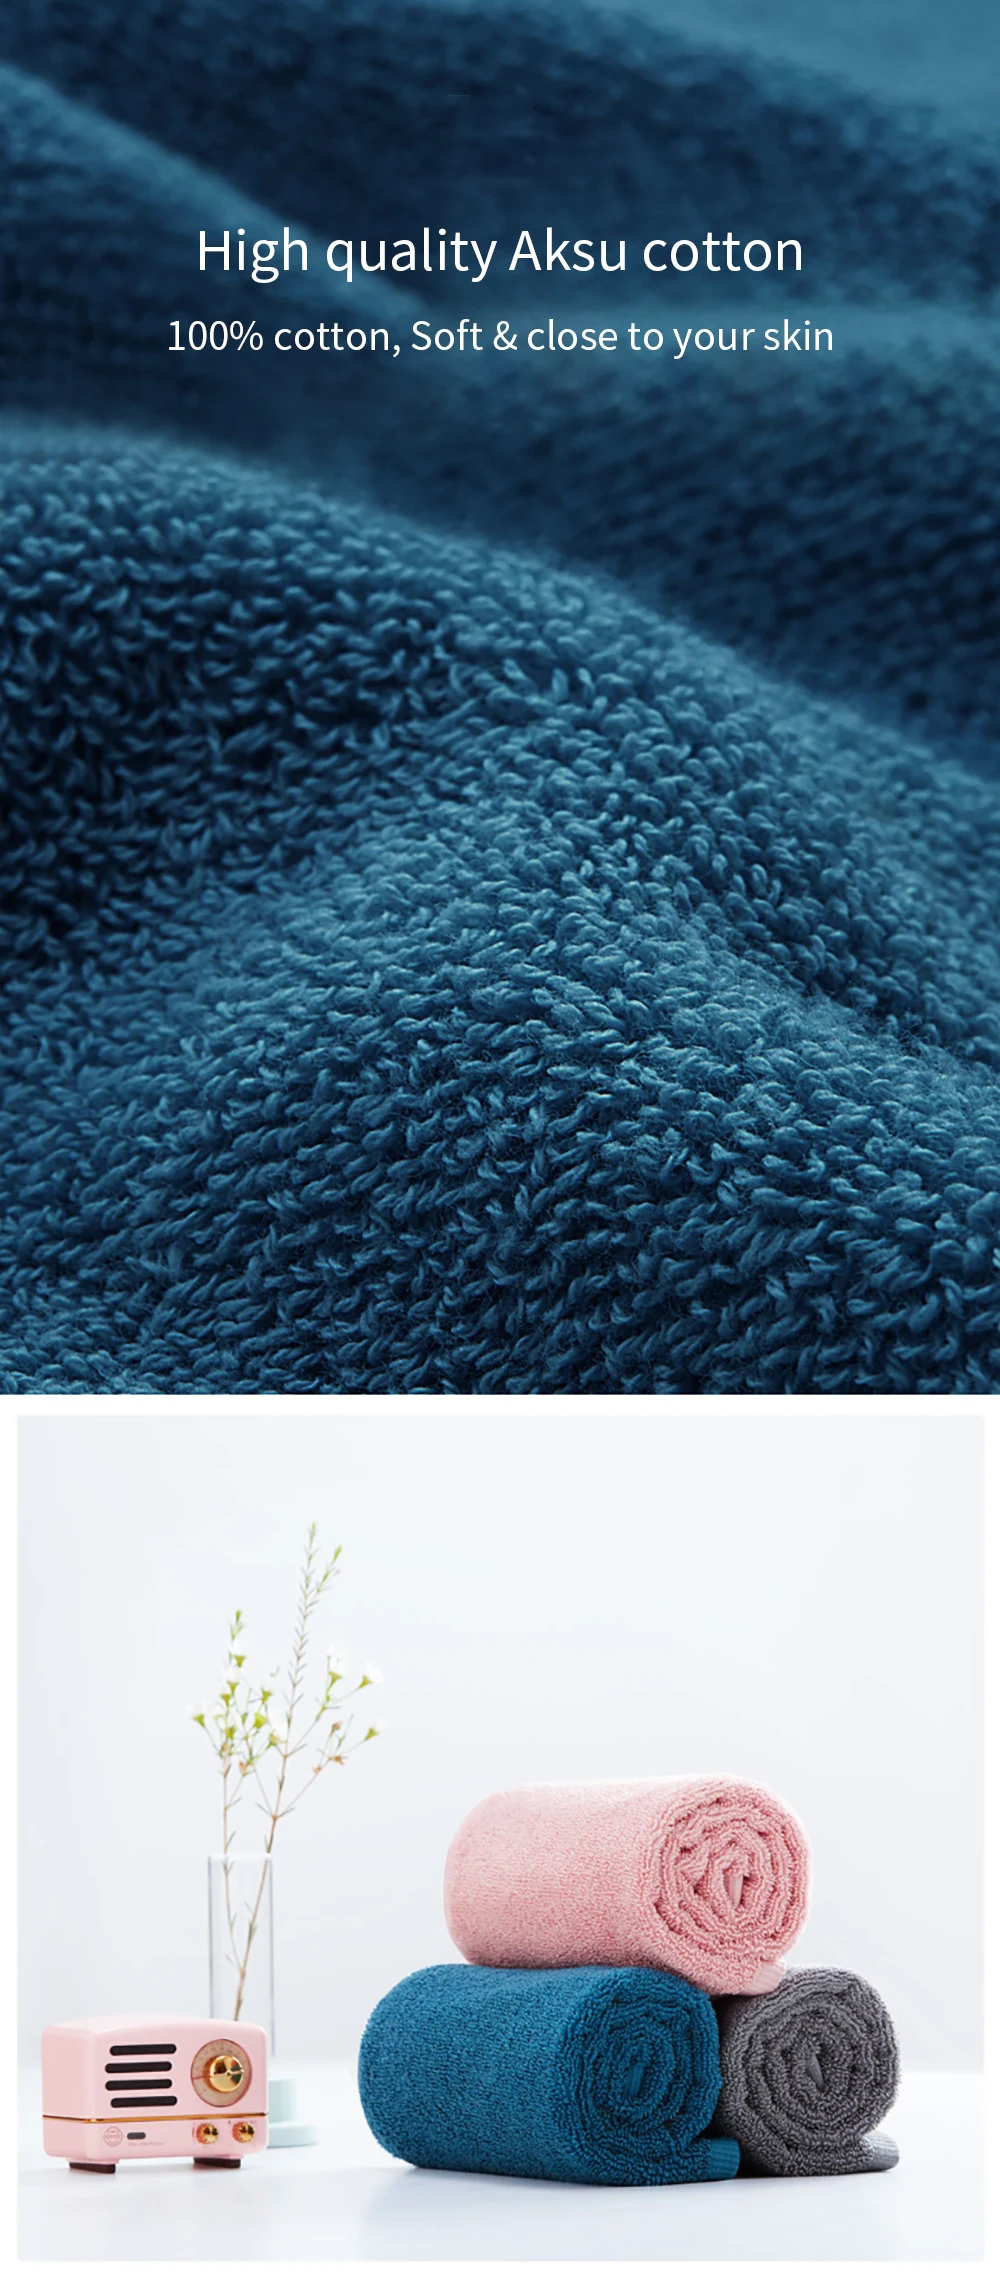 XIAOMI Mijia Полотенца хлопок с высоким уровнем водопоглощения Ванна мягкие и удобные пляжные полотенца для лица и рук 32x70 см